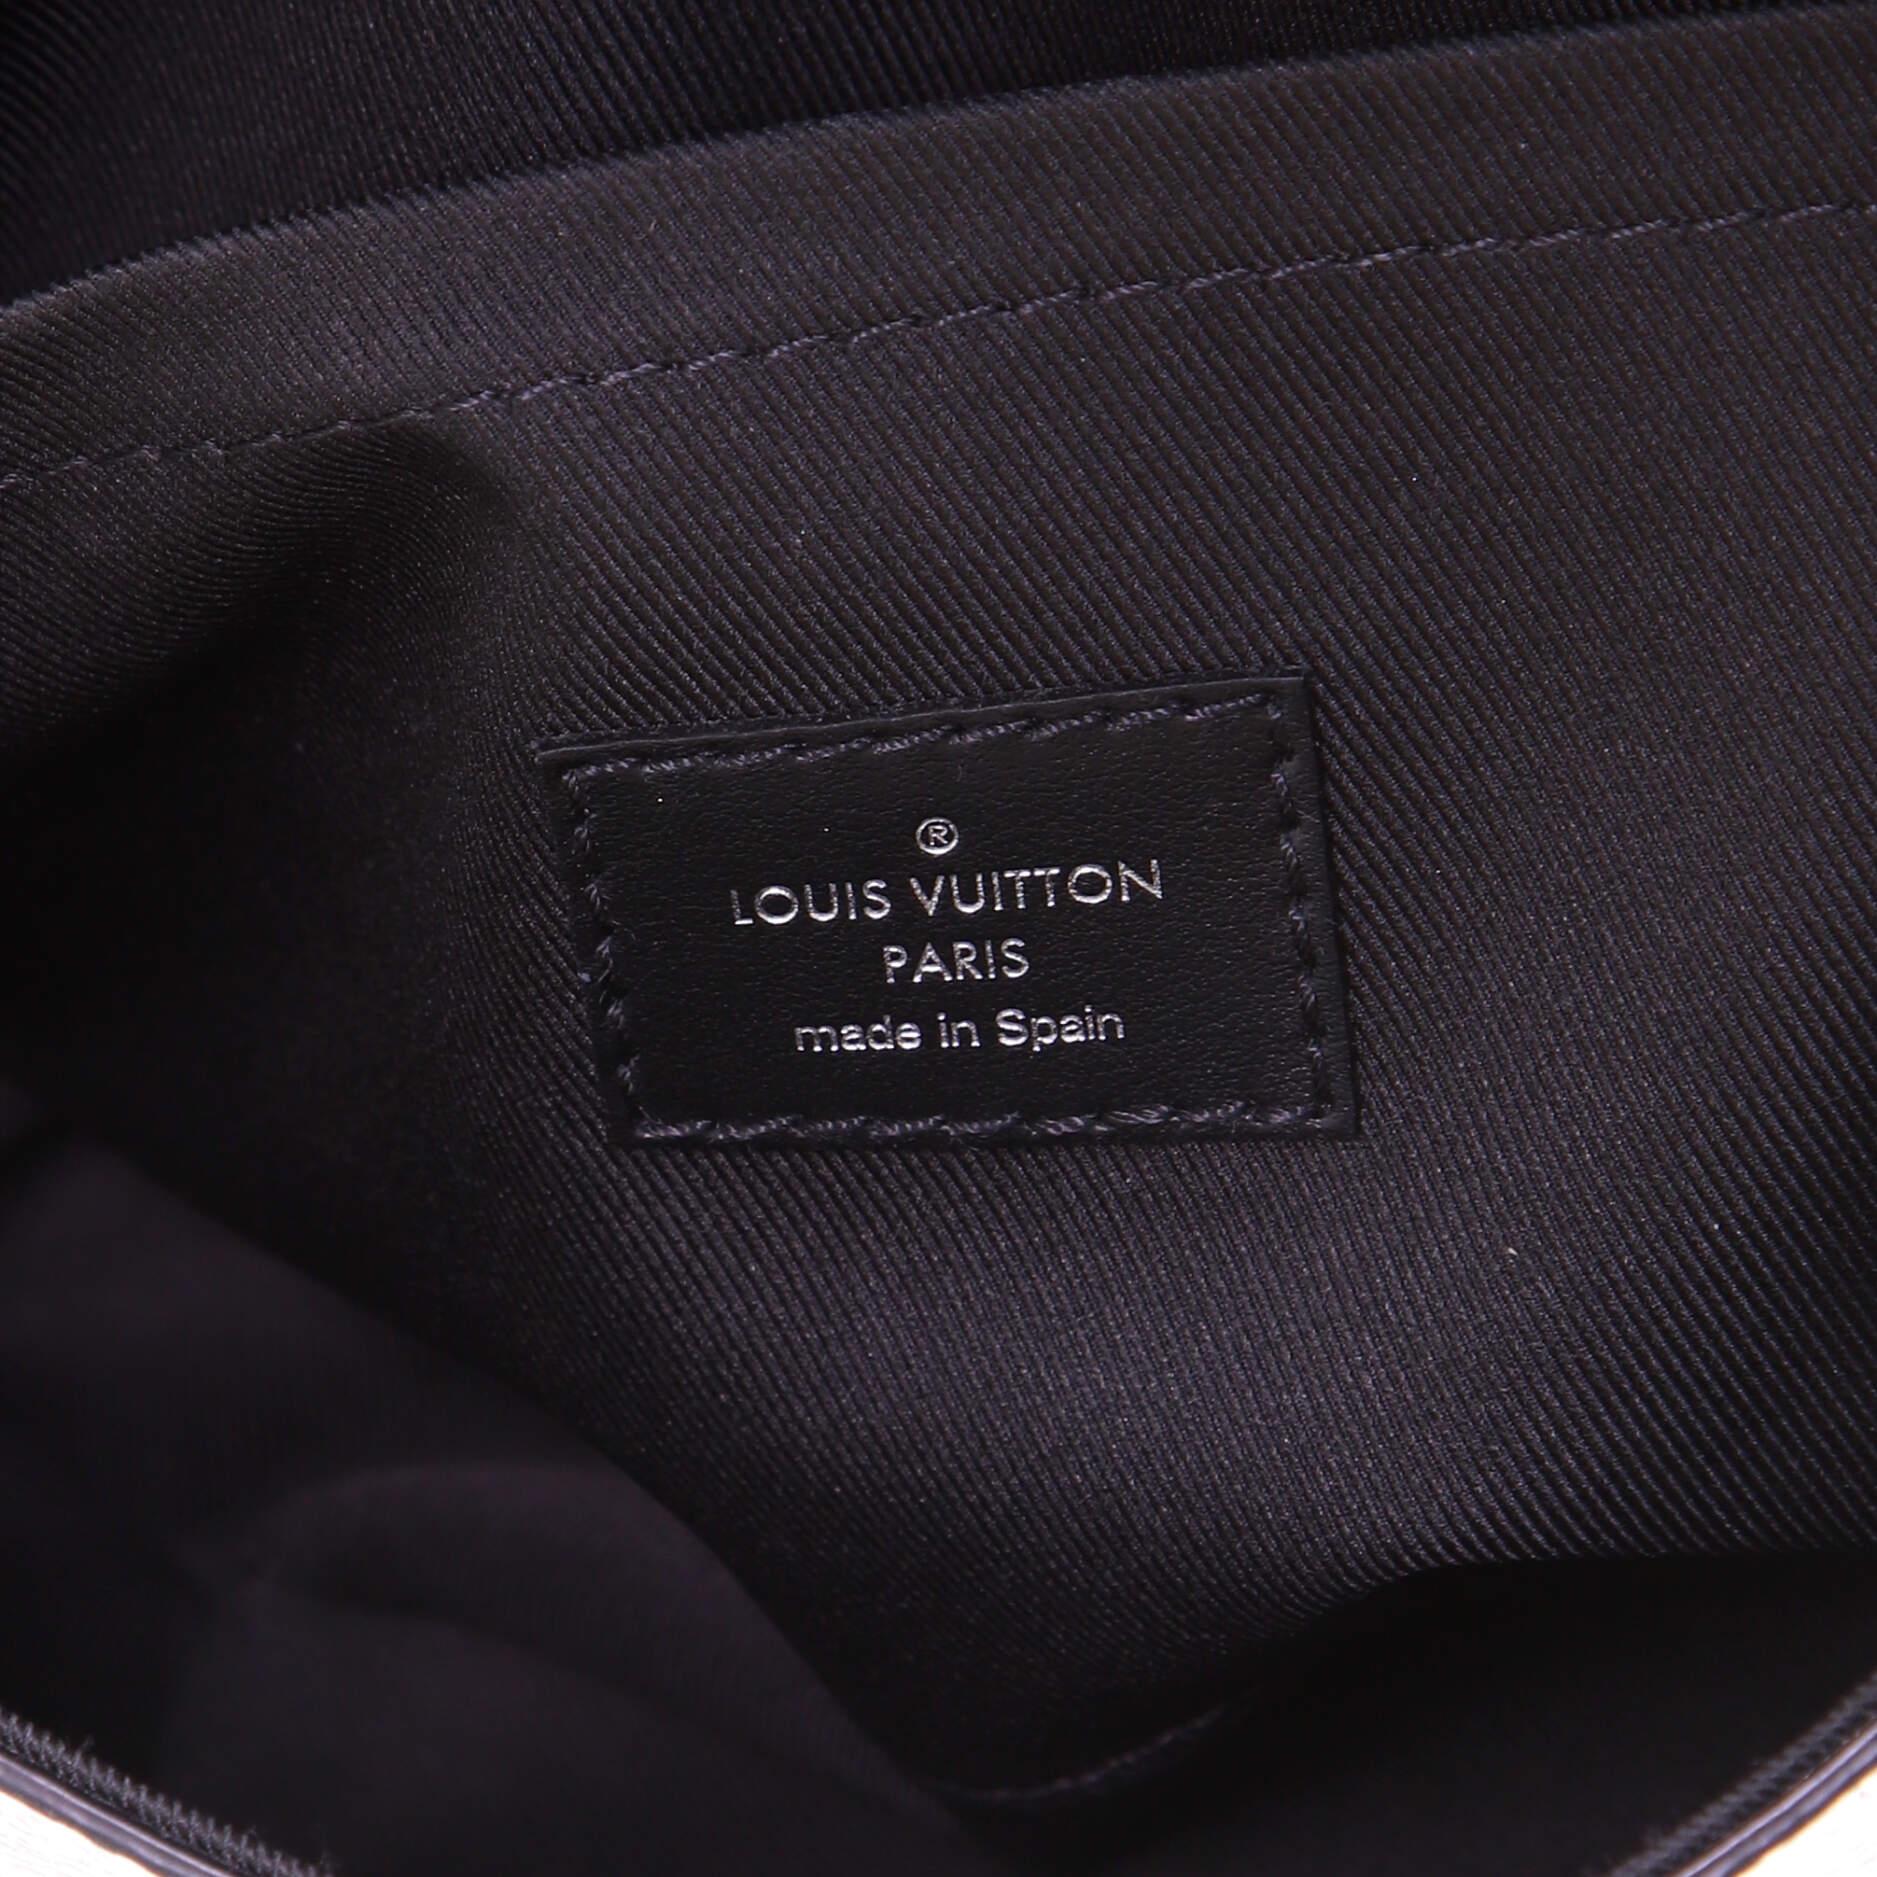 Women's or Men's Louis Vuitton Studio Messenger Bag Limited Edition Damier Graphite 3D